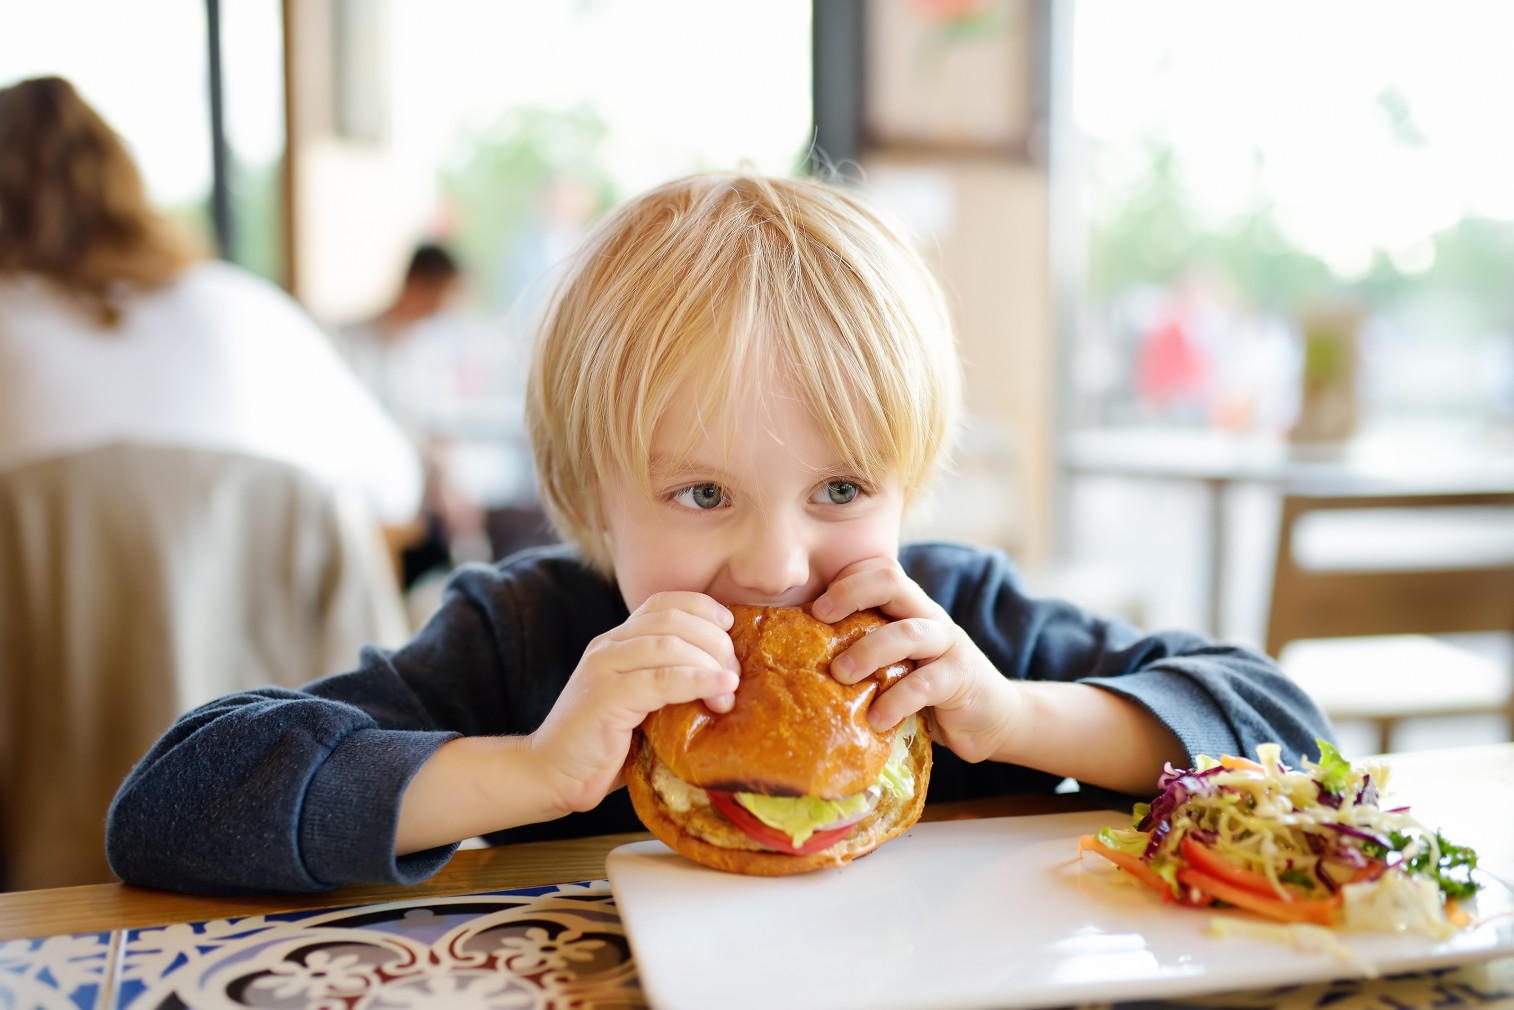 Bild: Vorsicht vor häufigem Fast Food bei Kindern! Bild: @Maria_Sbytova via Twenty20